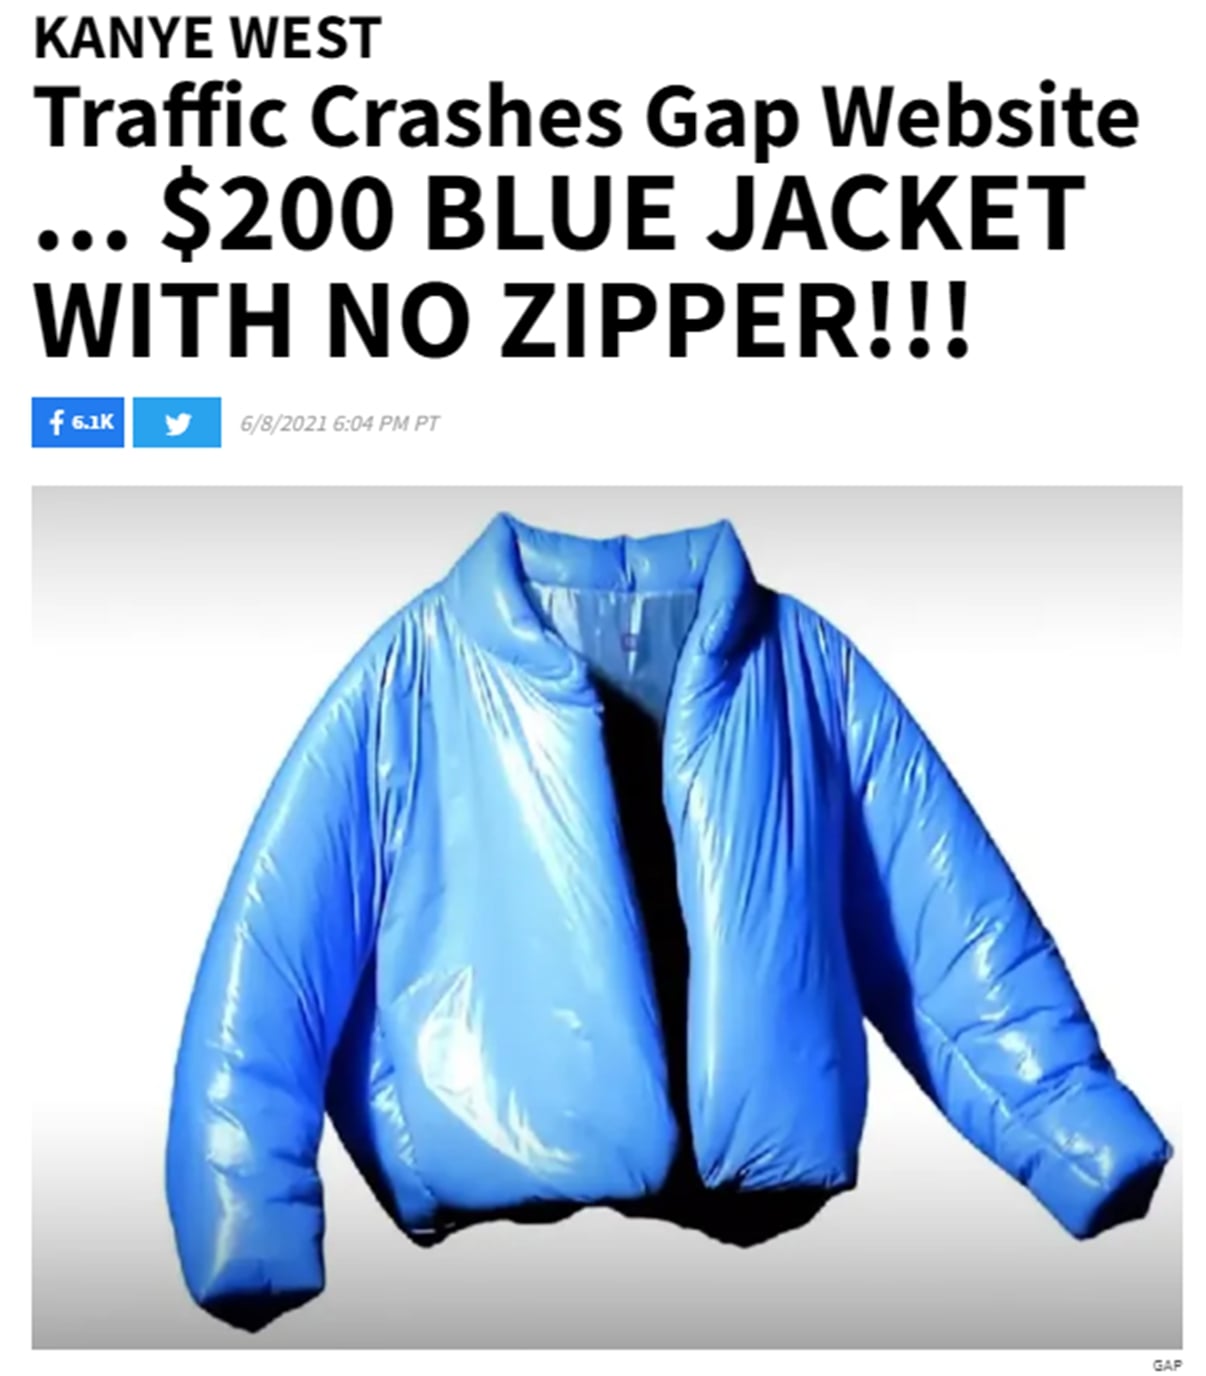 Headline reading "Kanye West Traffic Crashes GAP website: $200 blue jacket with no zipper"